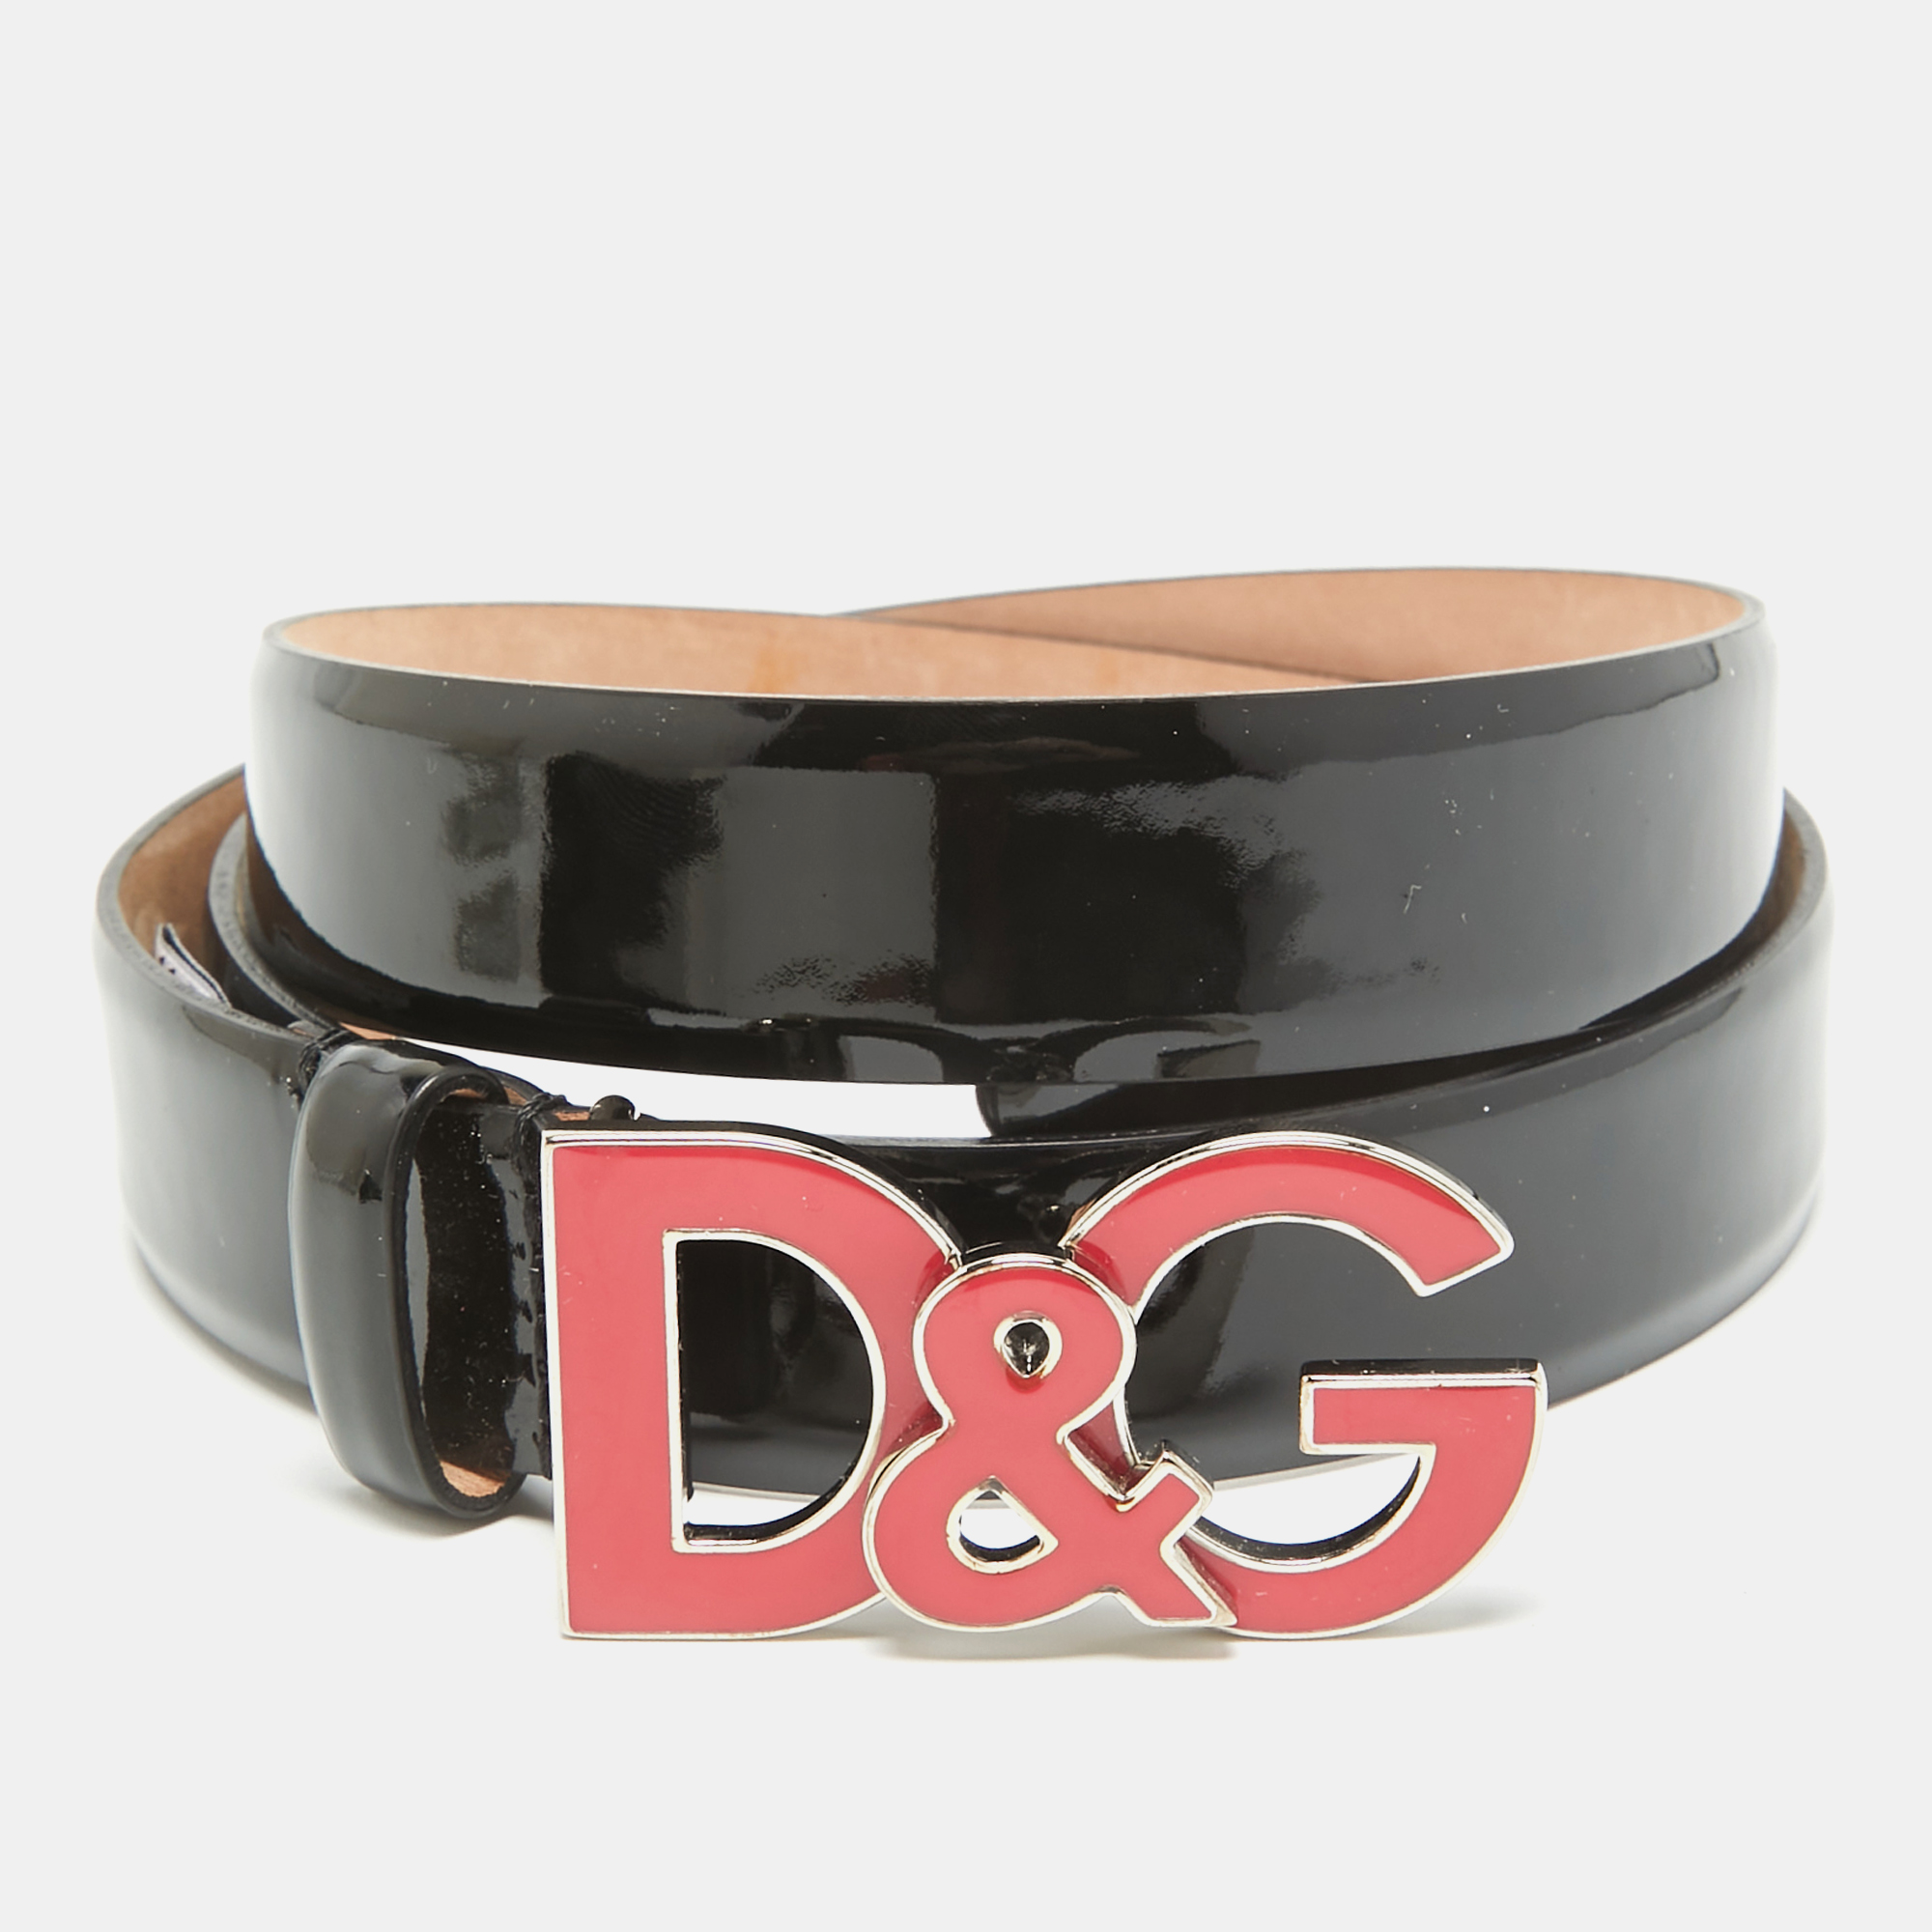 D&g black patent leather logo buckle belt 90 cm